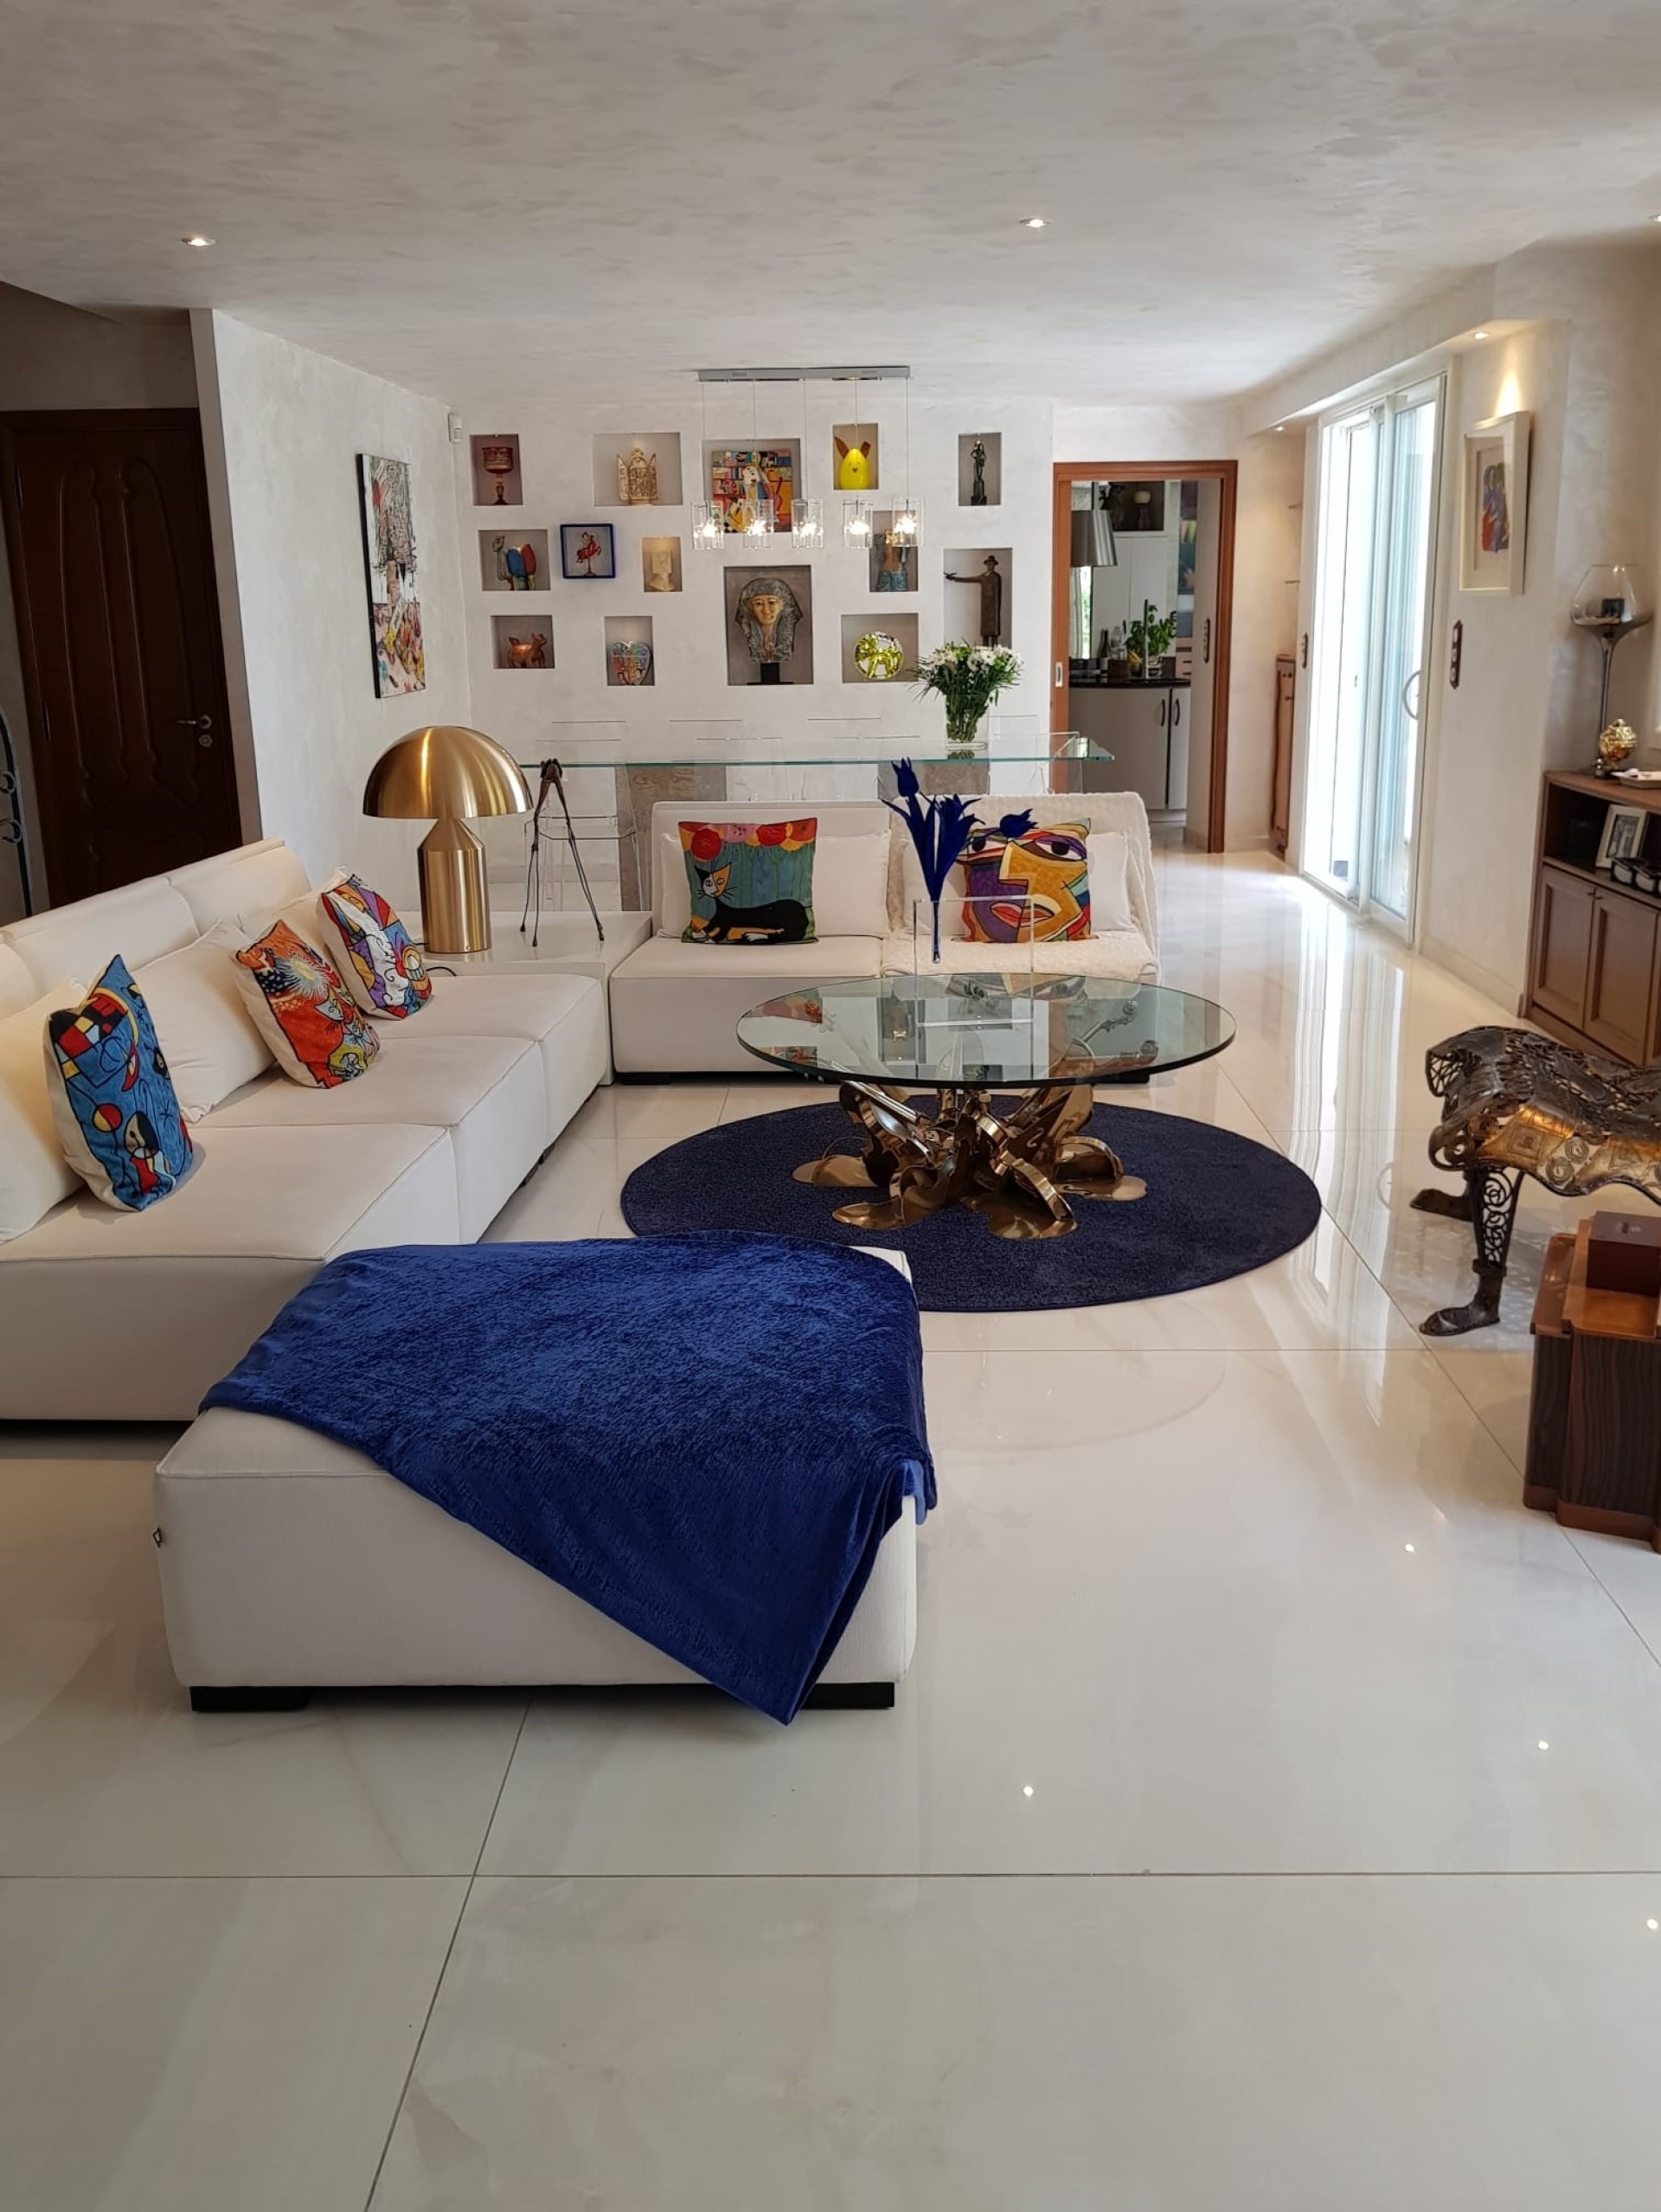 Dotta Appartement de 6+ pieces a vendre - VILLA ALBAYA - Saint-Roman - Monaco - imgimage17